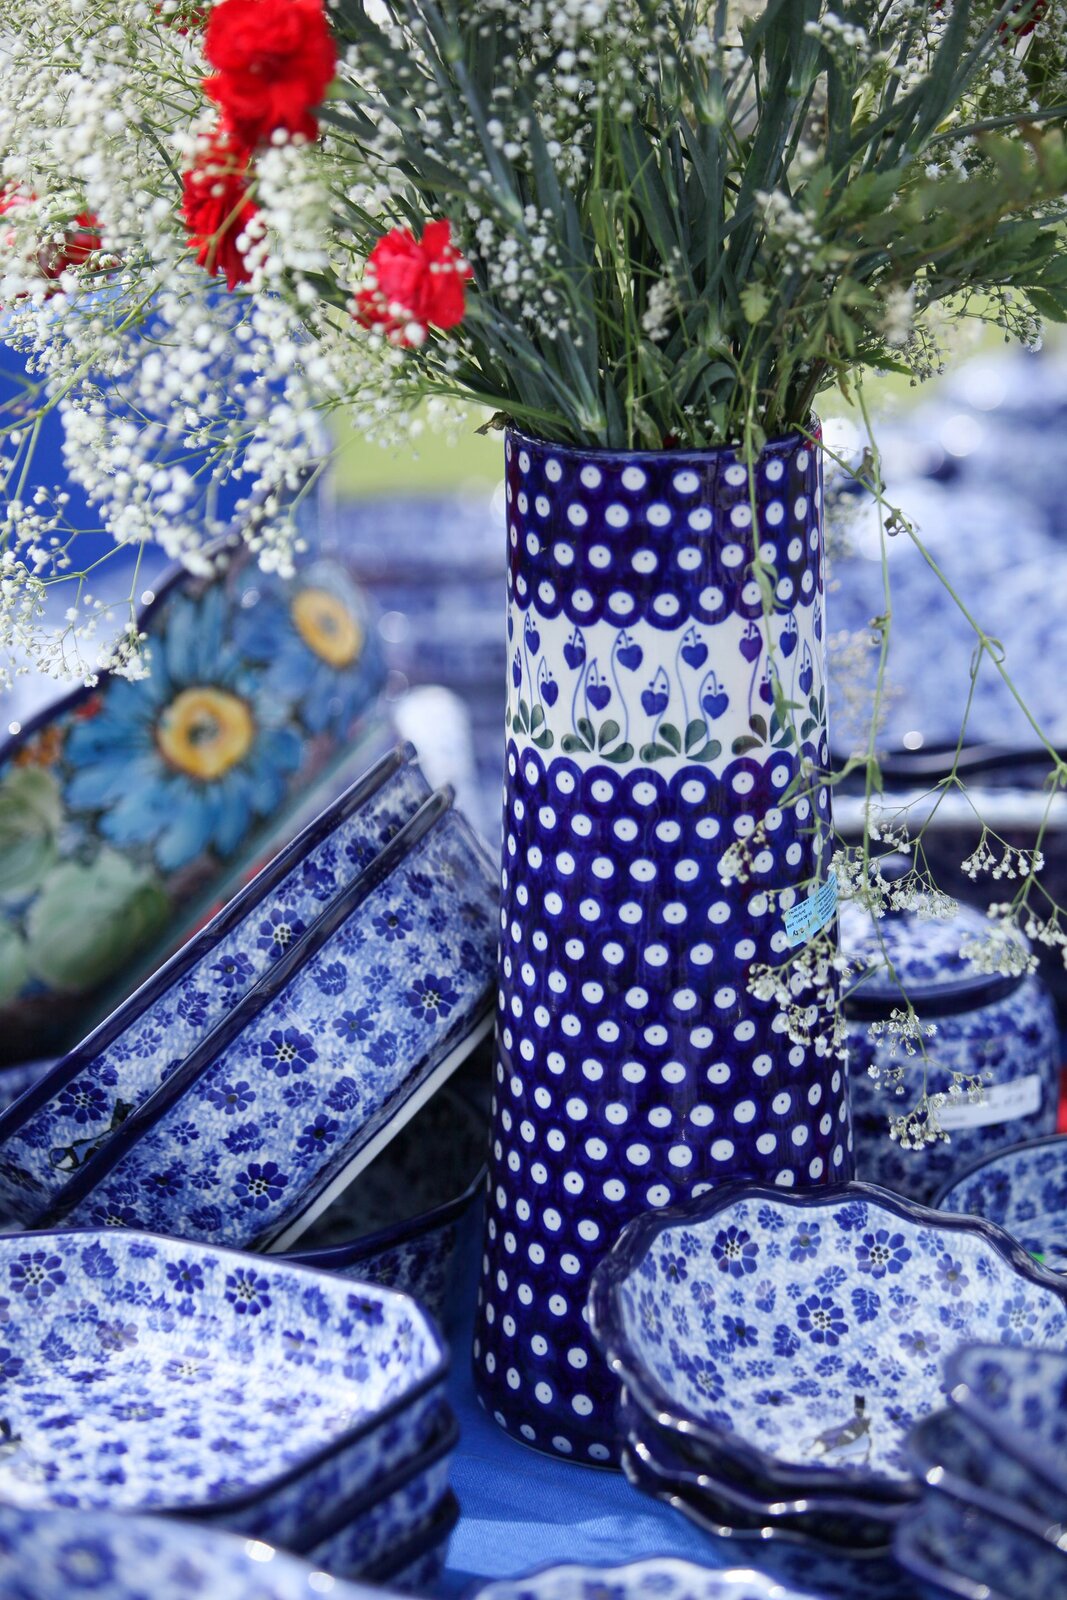 Ilustracja przedstawia zestaw ceramiki, którego centralnym elementem jest wazon. Jest to ceramika w niebiesko-białym kolorze wyglądająca na ręcznie zdobioną. Jest to ceramika bolesławiecka, produkt wykonany z kamionki.